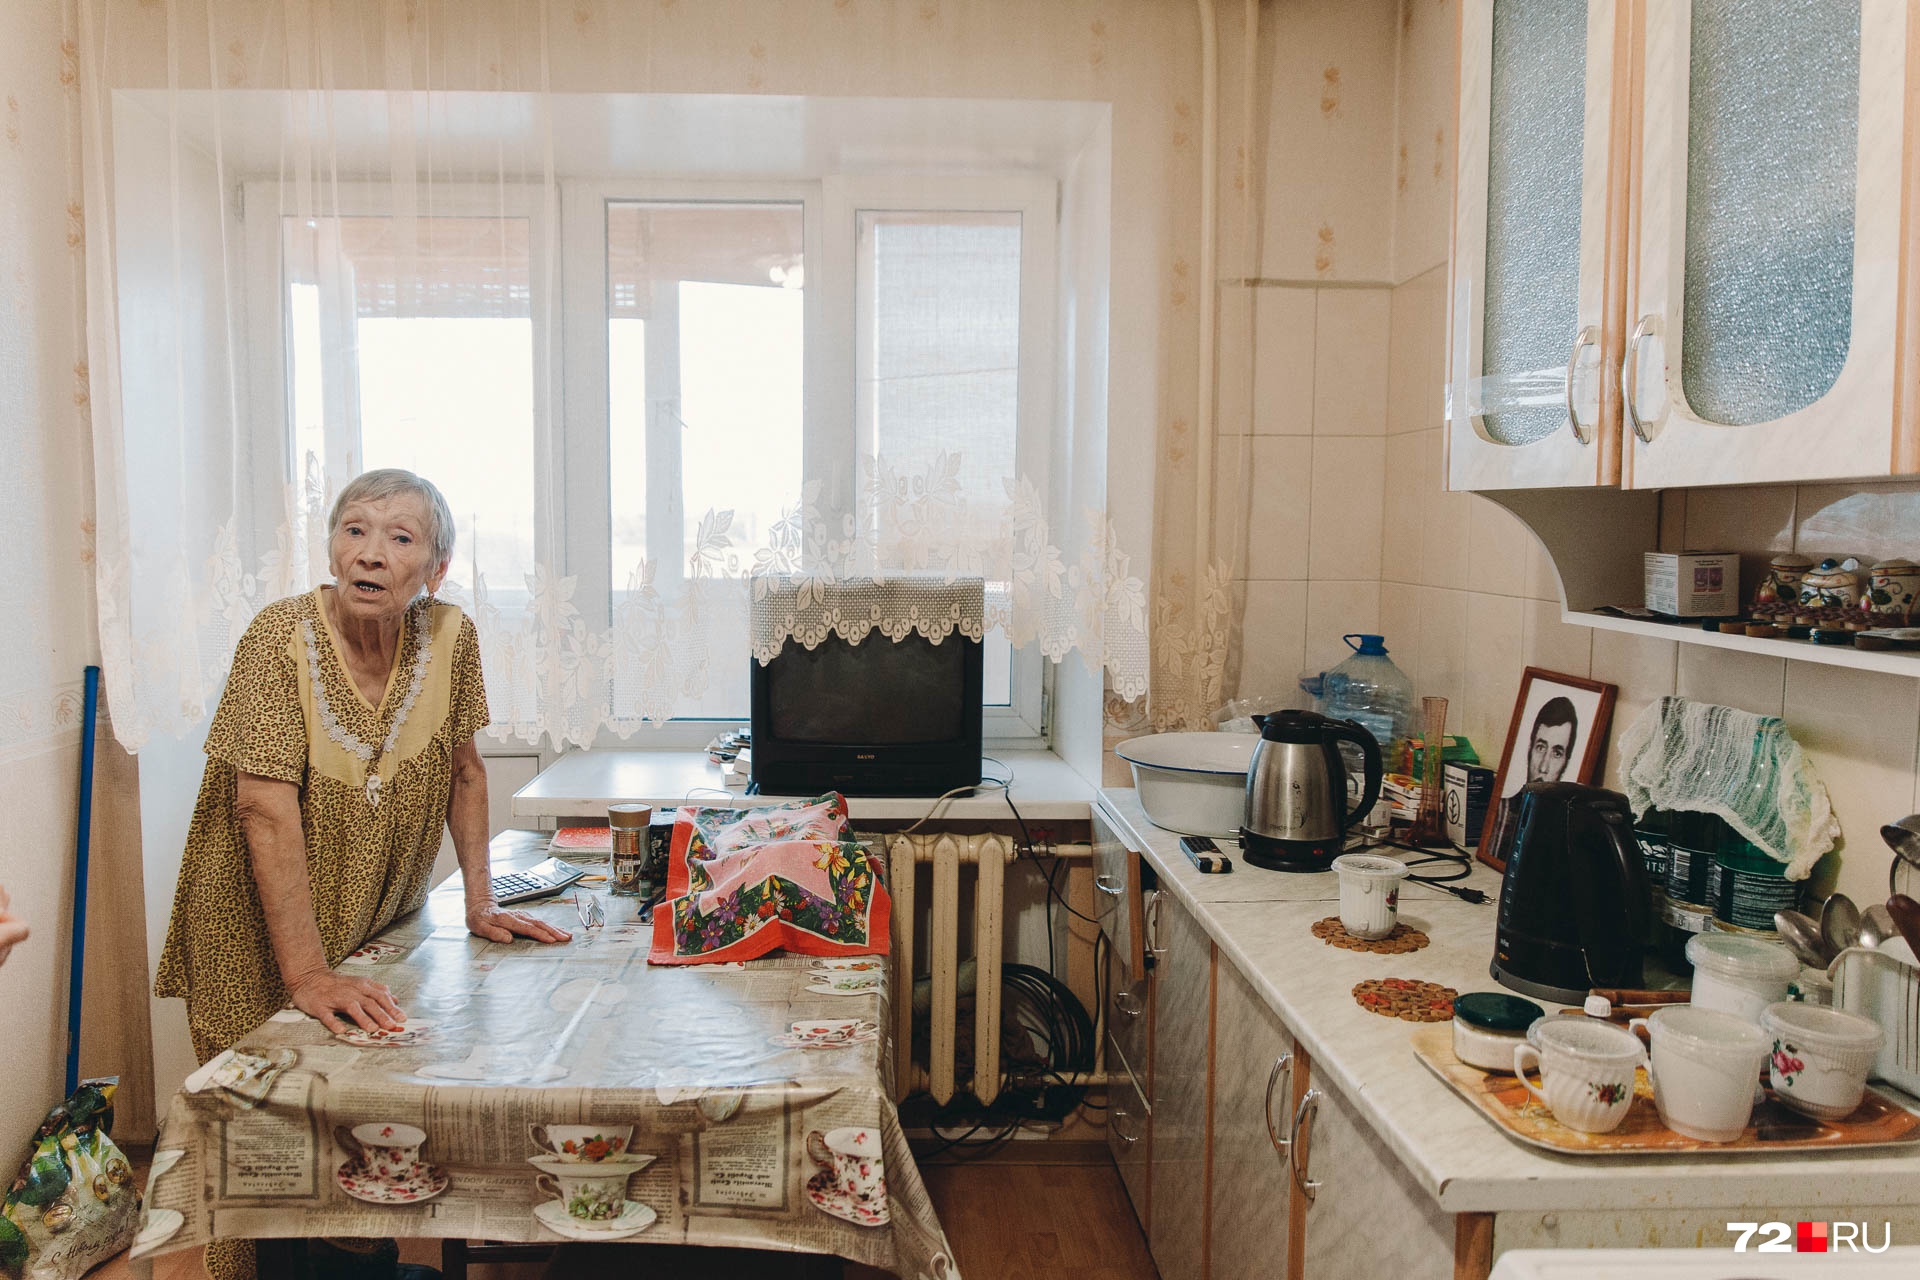 На кухонном гарнитуре стоит портрет супруга пенсионерки. Вместе они прожили больше тридцати лет